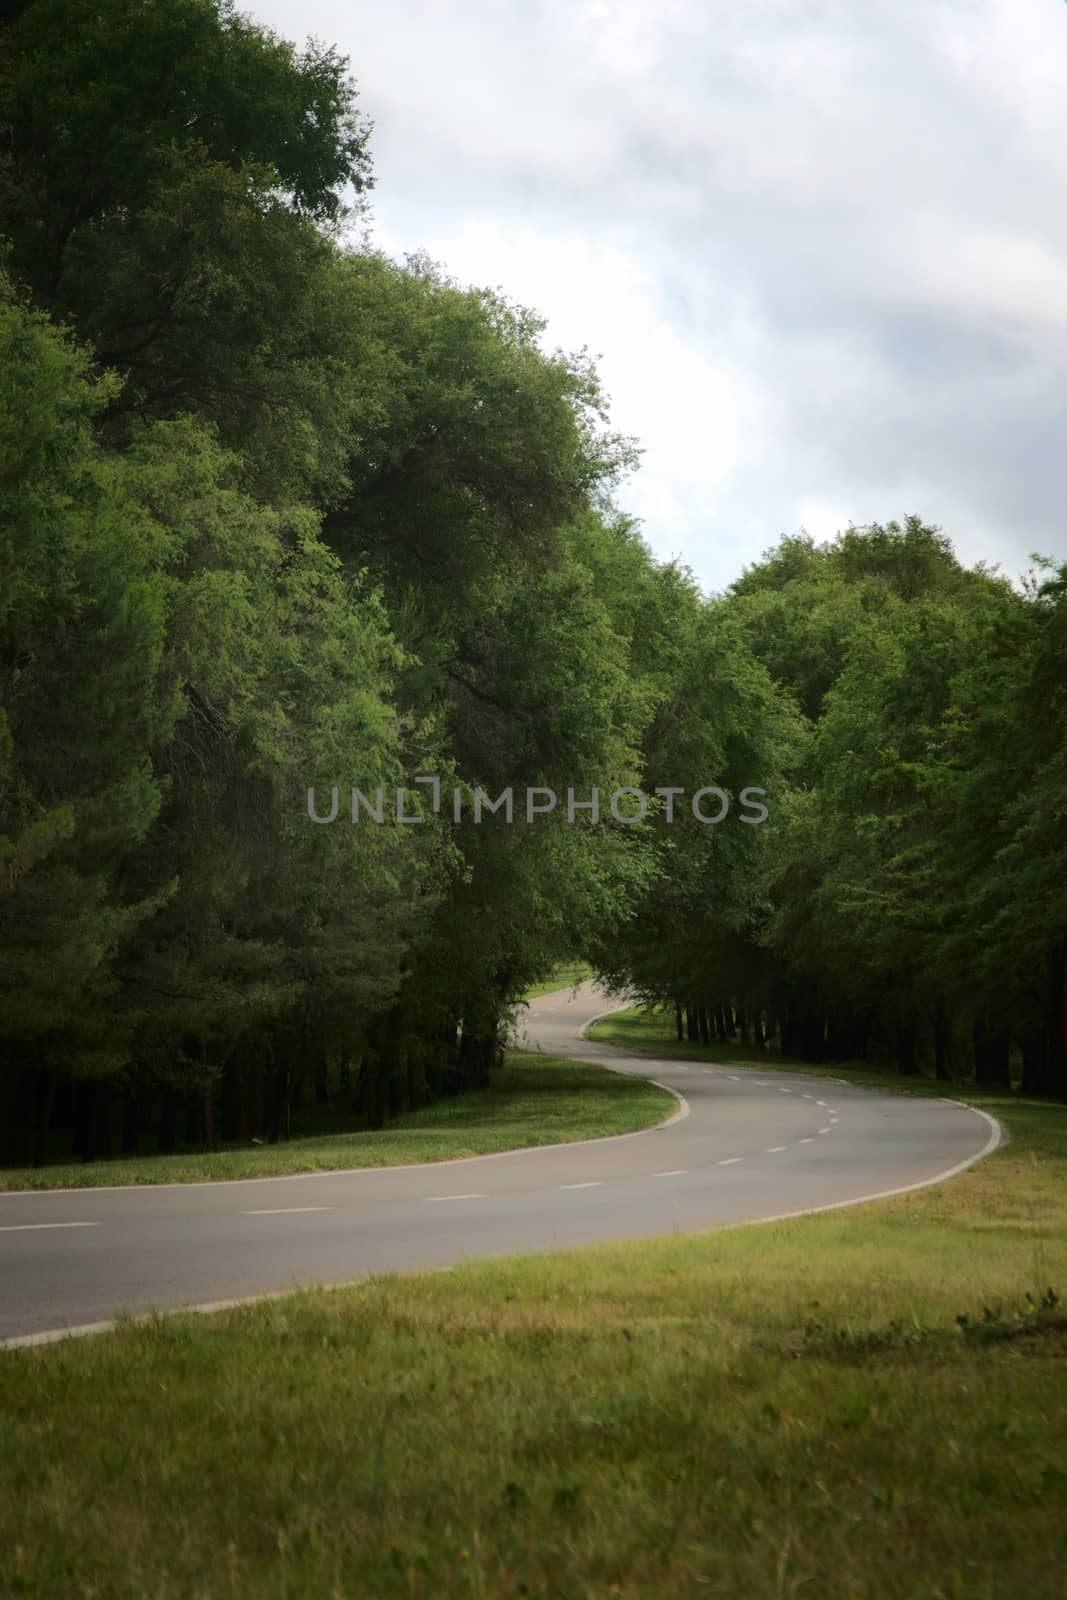 Winding asphalt road in a woodlands area by hernan_hyper